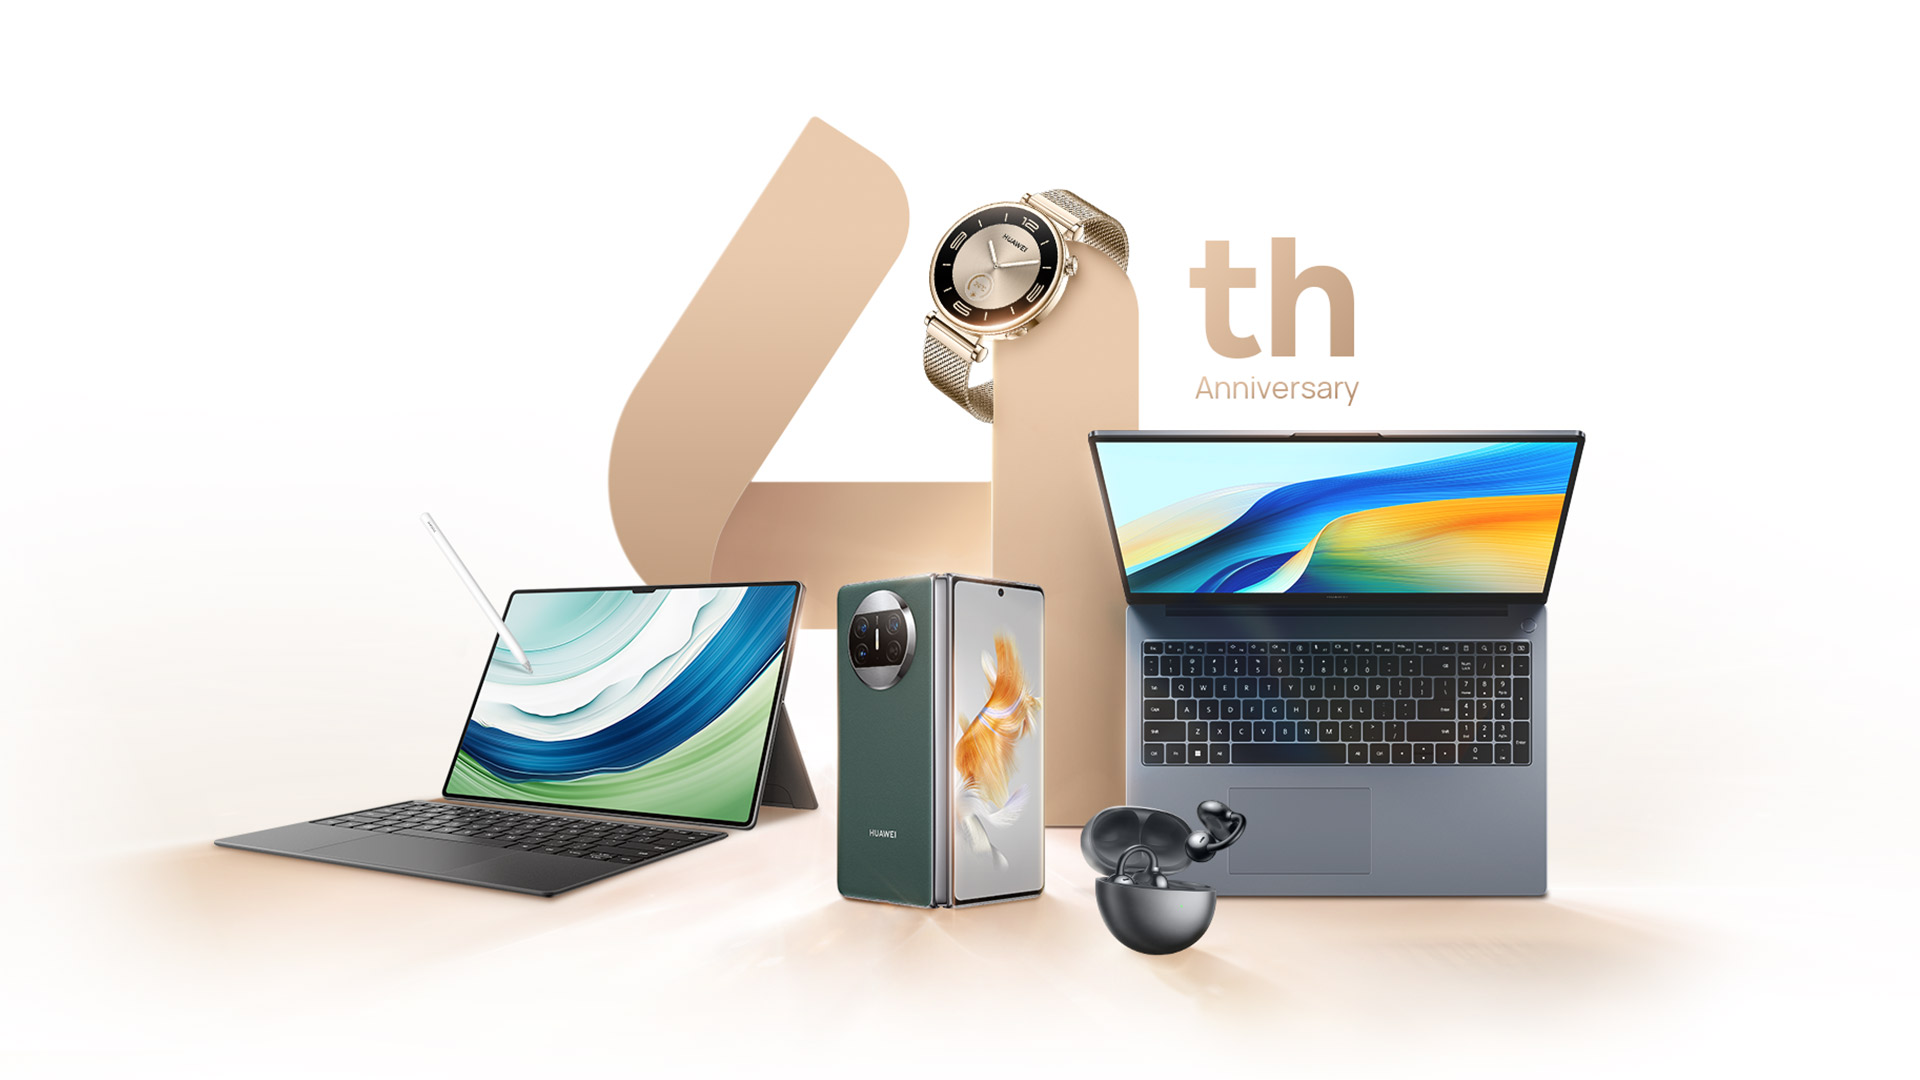 Отпразднуйте годовщину магазина Huawei с огромной экономией на ноутбуках, умных часах, наушниках и многом другом.